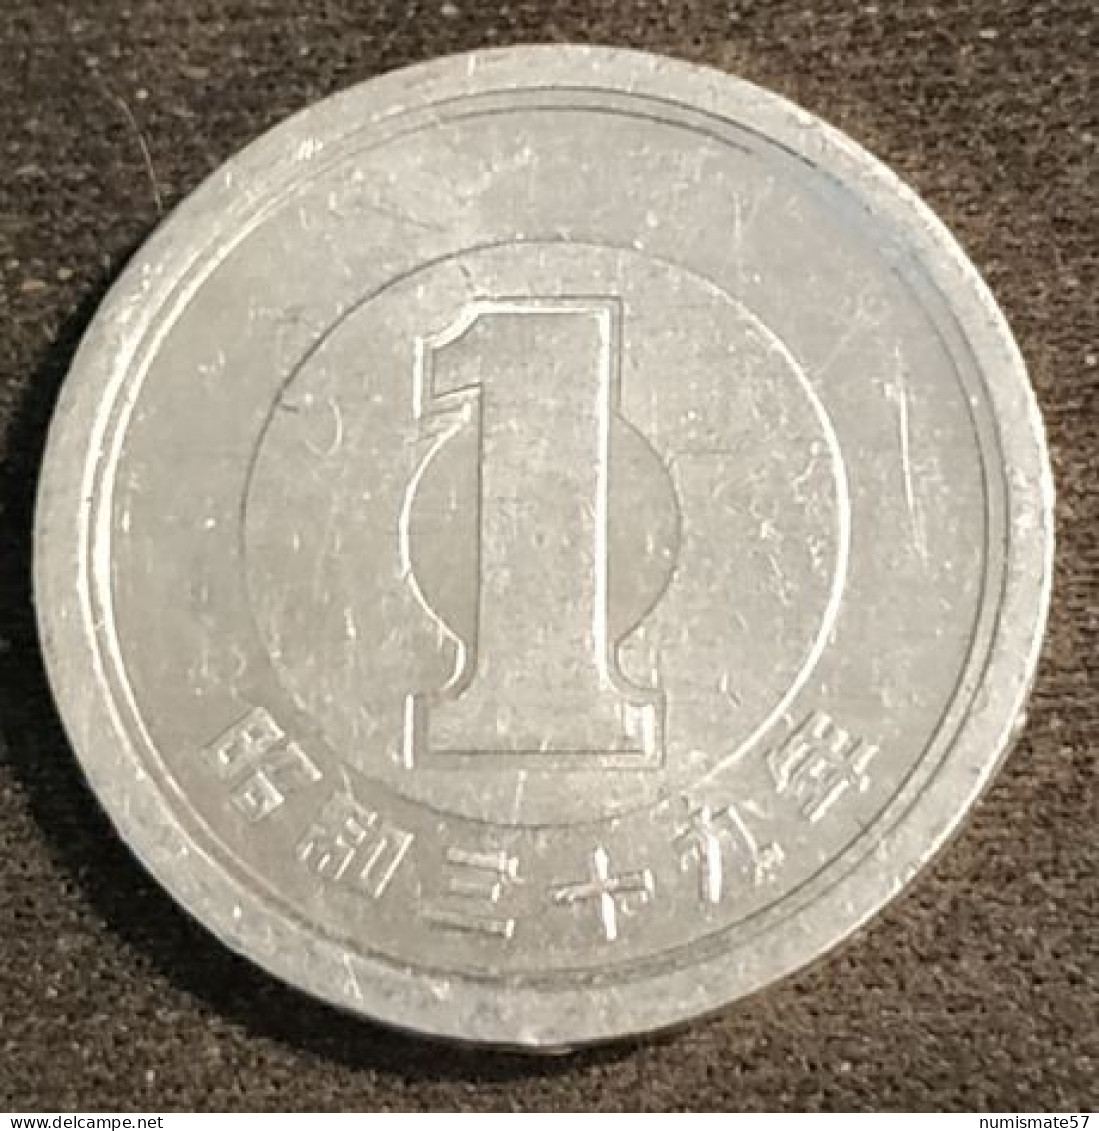 JAPON - JAPAN - 1 YEN 1964 - Shōwa - Year 39 - KM 74 - Japón